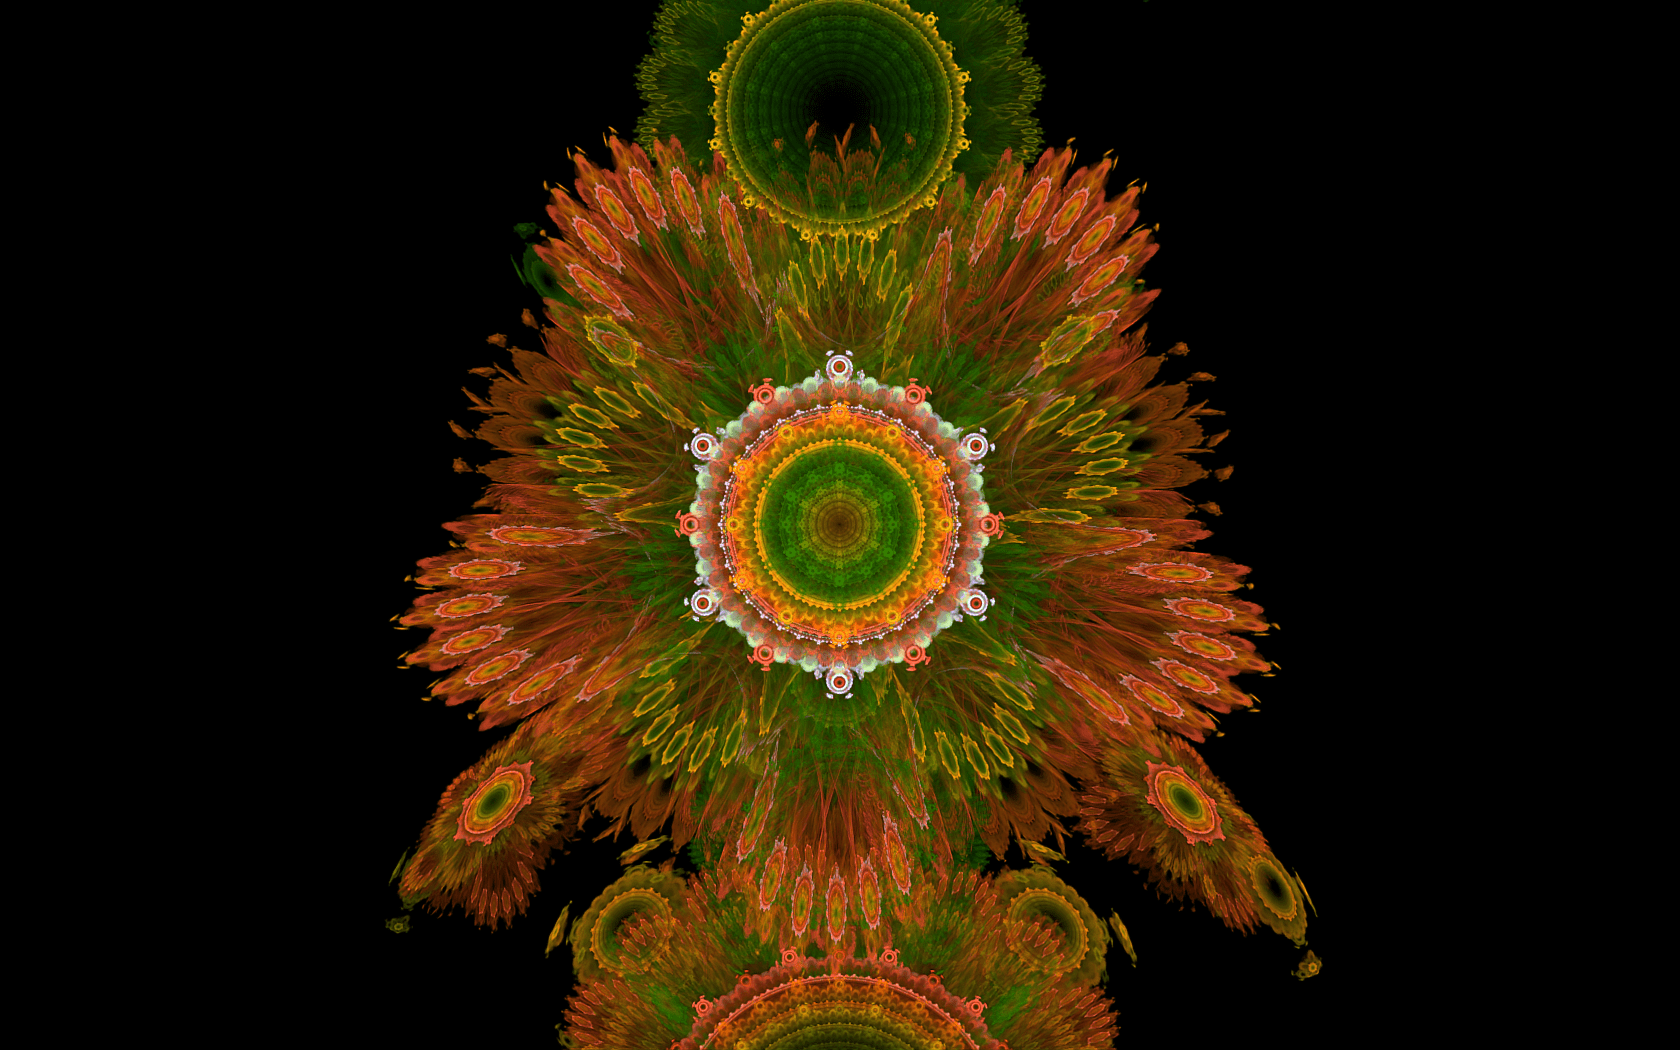 Orange and green fractal image